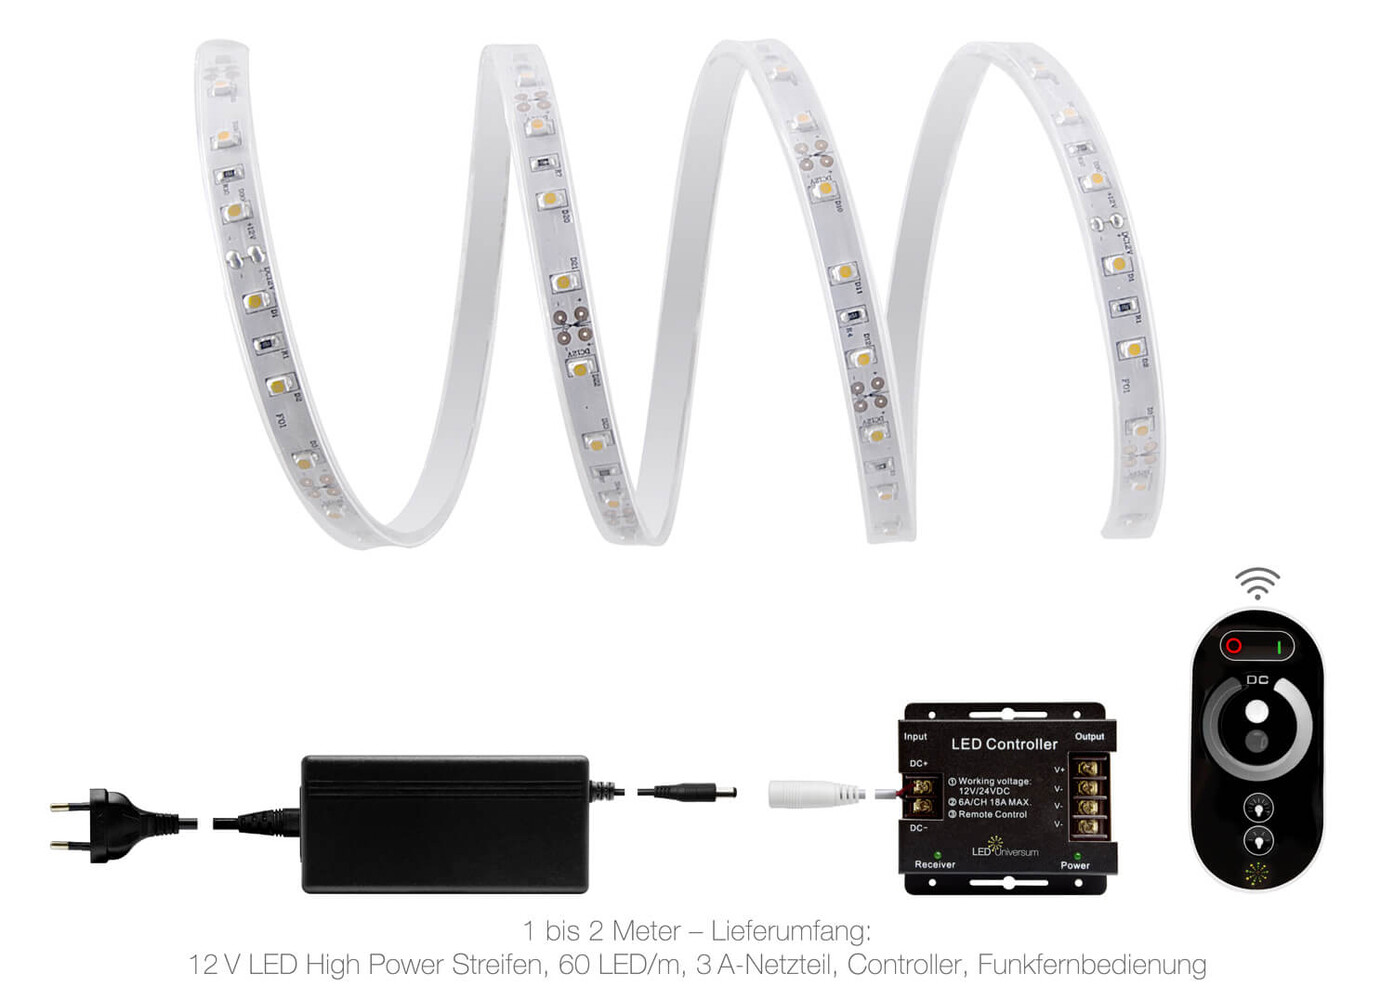 Hochwertiger High Power LED Streifen warmweiß mit 60 LED pro Meter, professionell und wasserdicht, von LED Universum